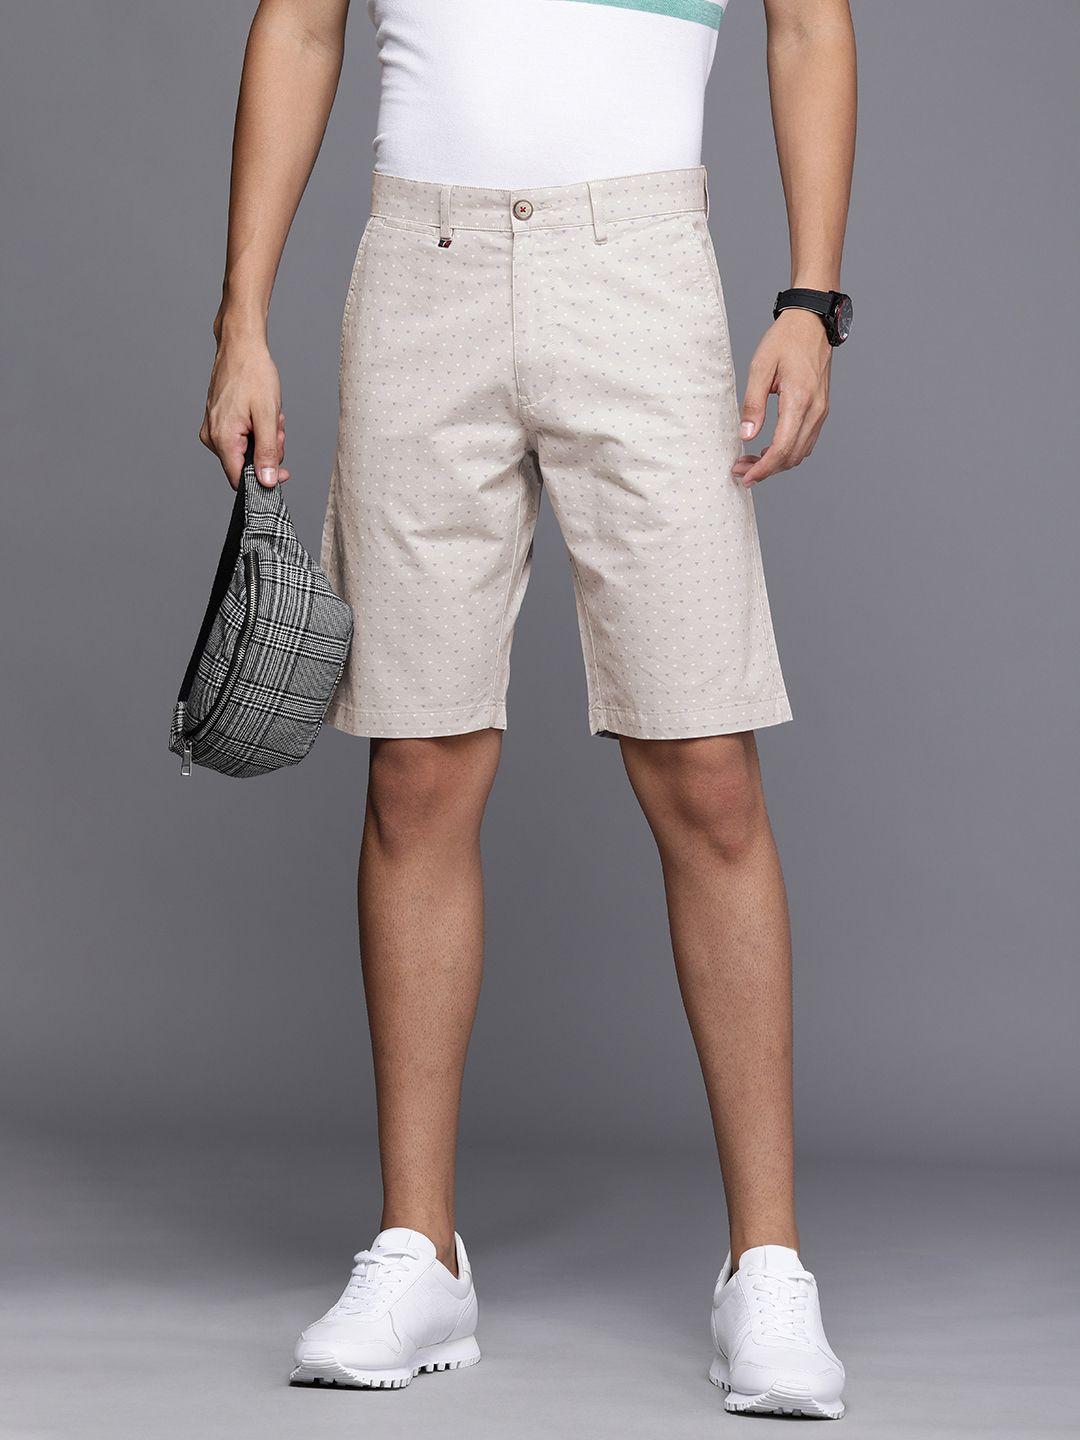 louis philippe sport men grey geometric printed slim fit regular shorts